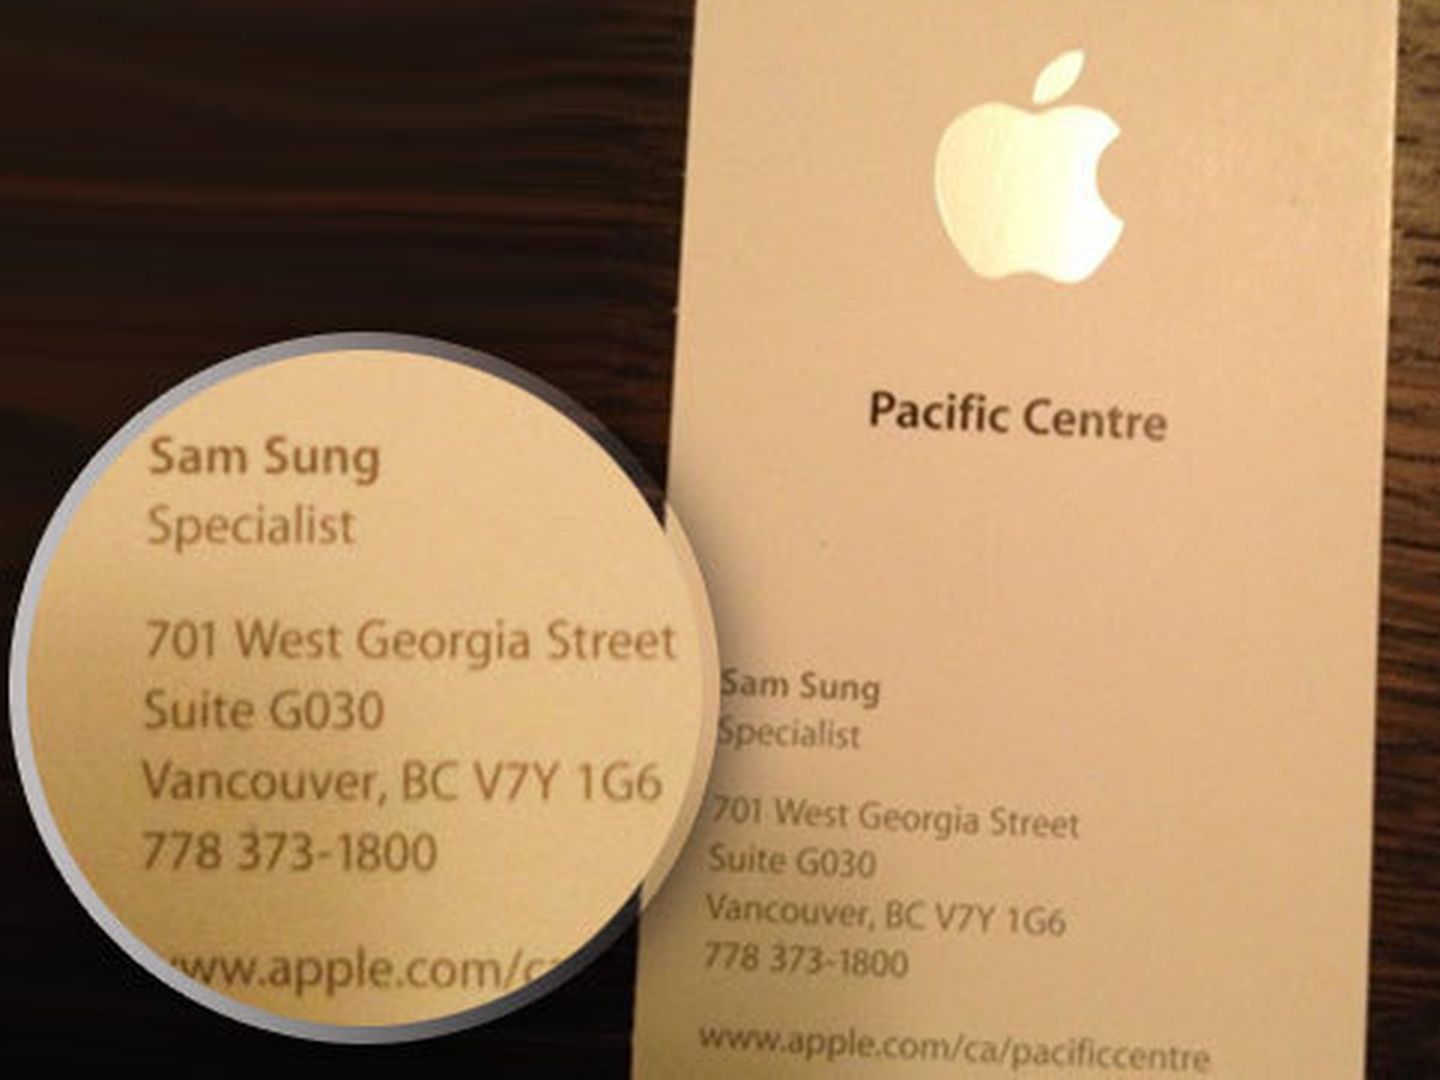 La acreditación de Sam Sung como especialista de Apple